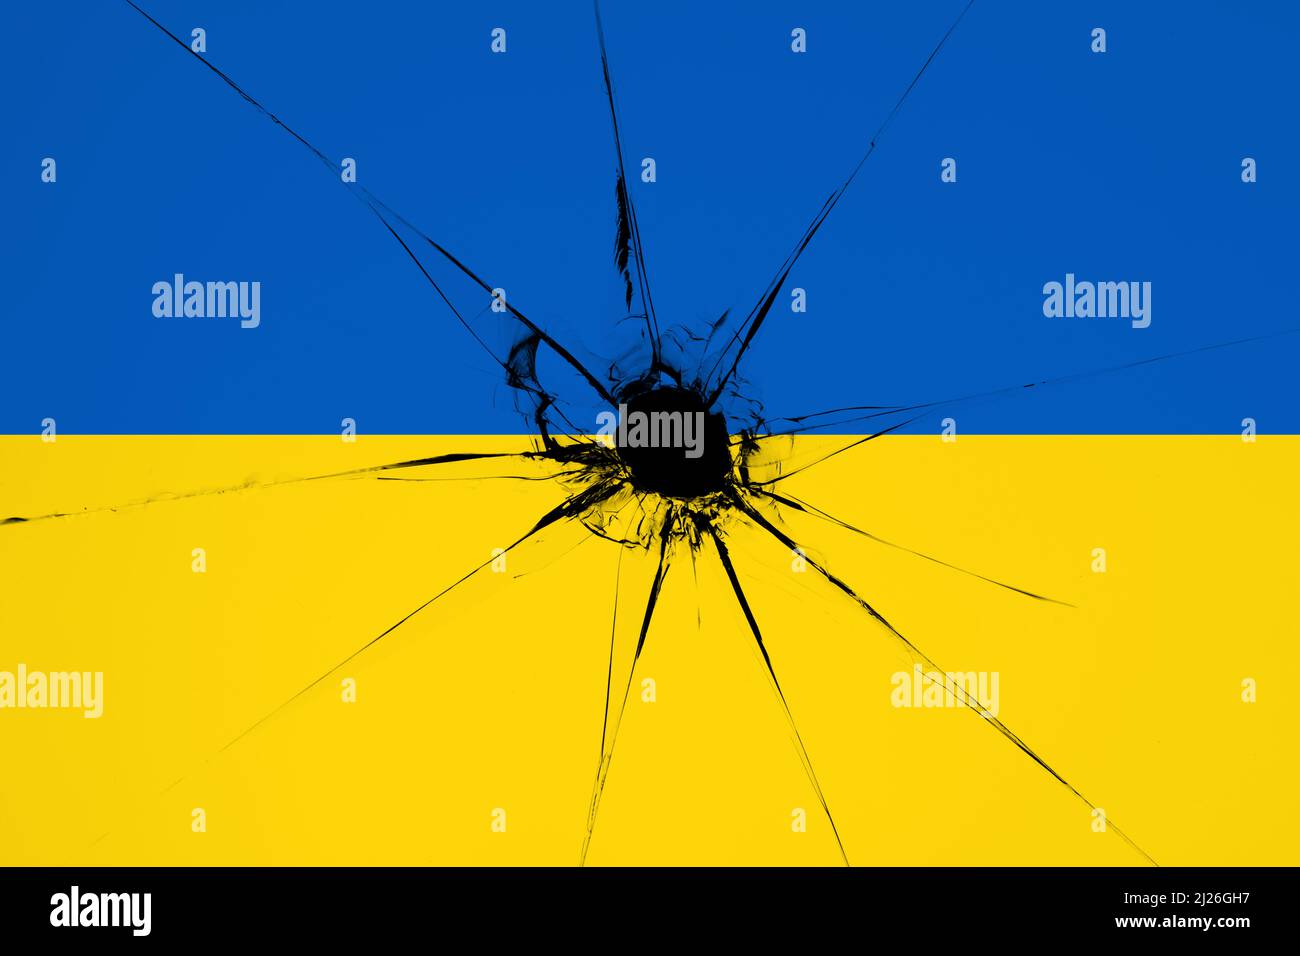 Bandiera bicolore blu e gialla Ucraina con un buco da un colpo e spaccature illustrazione adatta per striscione o sfondo. Immagine della bandiera nazionale Ucraina Foto Stock